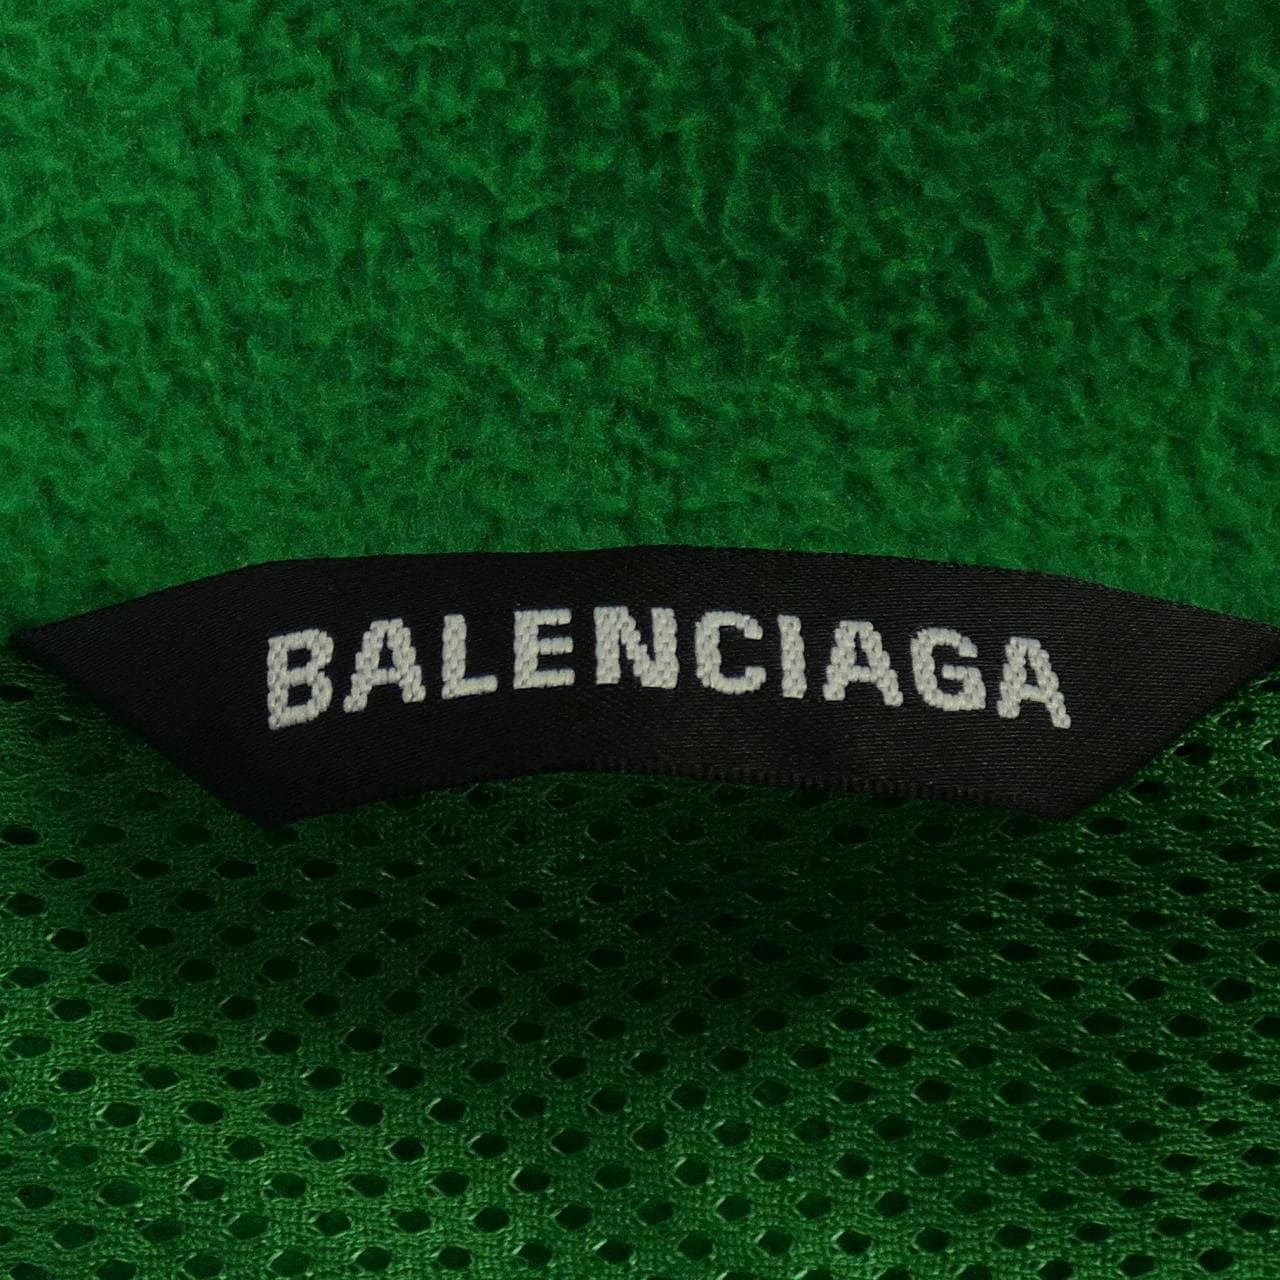 BALENCIAGA巴伦西亚加·布劳森